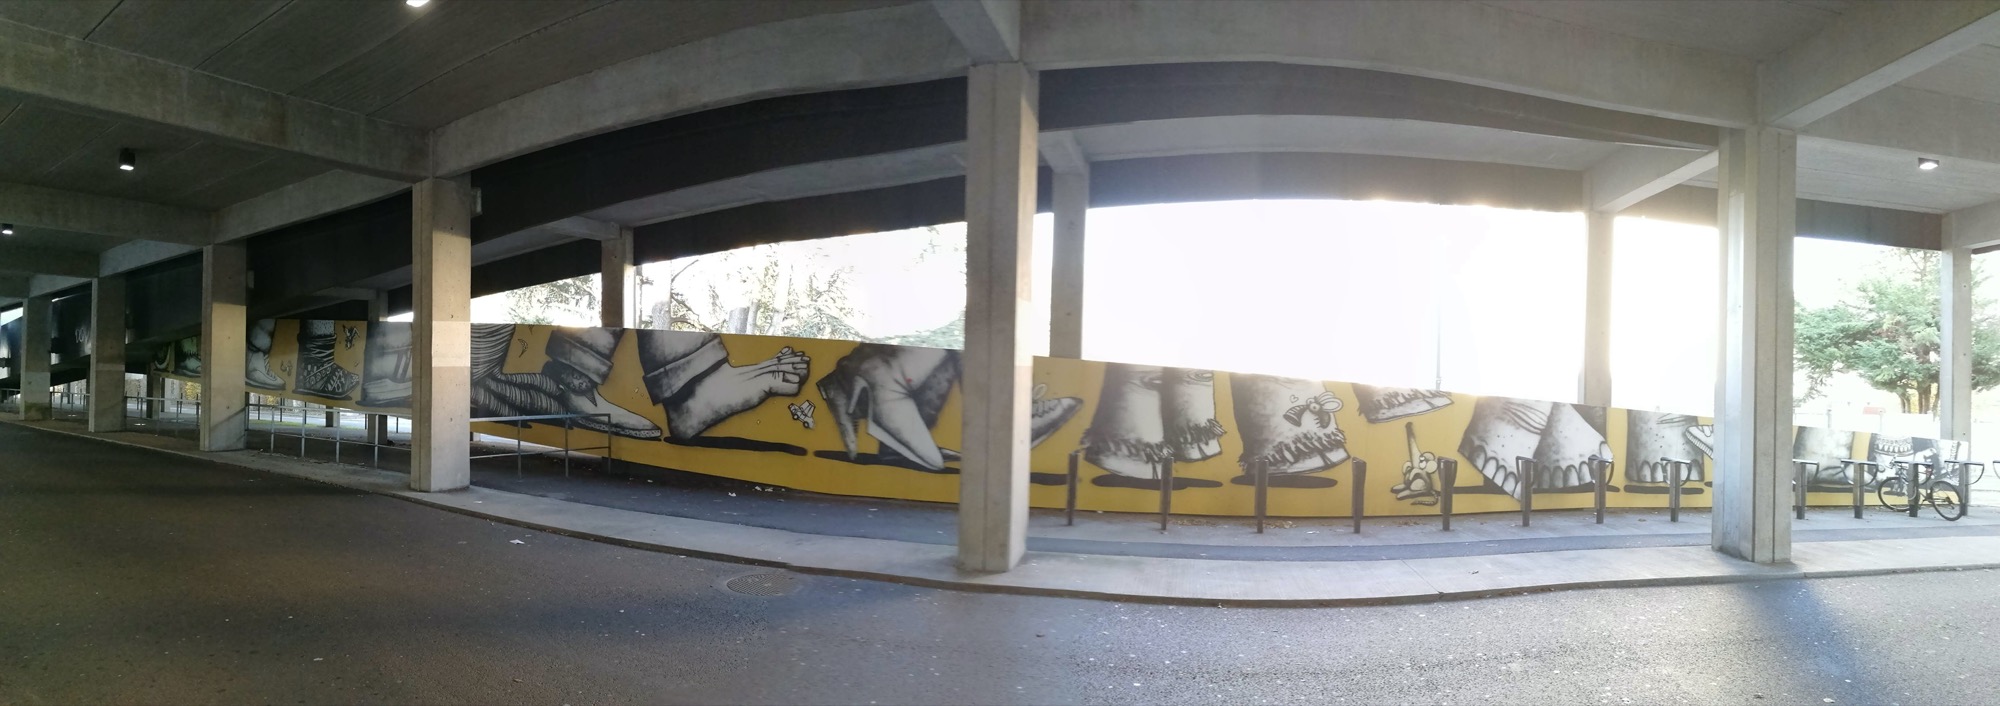 Graffiti 567  de Semor capturé par Rabot à Saint-Herblain France